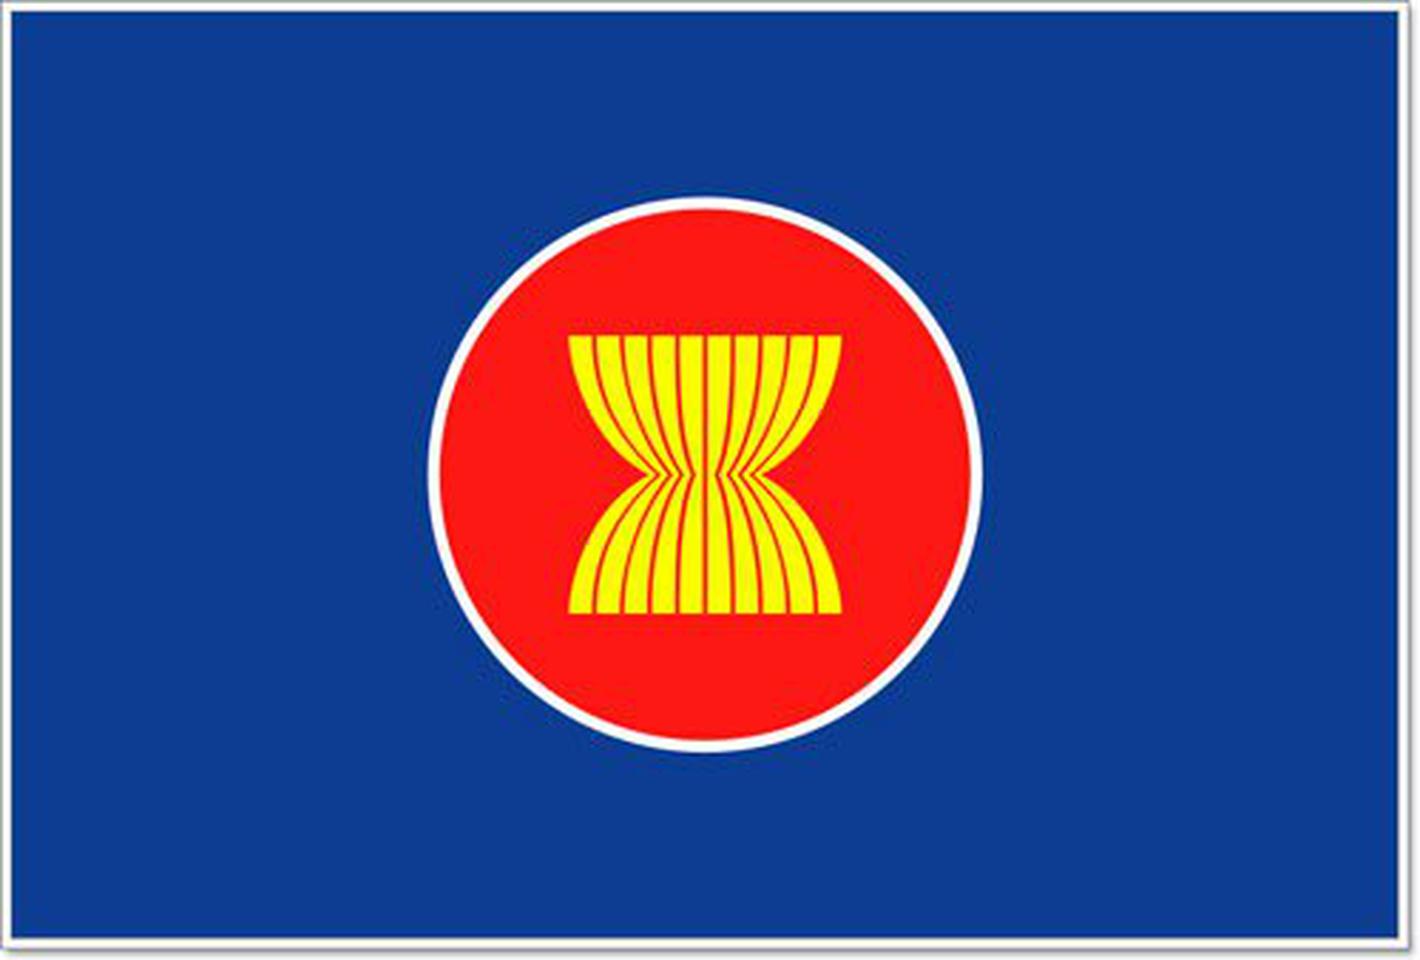 ร้านธงศาลายา ผลิต-จำหน่าย ธงตราสัญลักษณ์ ธงอาเซียน ตุ๊กตาอาเซียน ธงโบกติดก้านลูกโป่งอาเซียน 089-441-3138จัดส่งทั่วประเทศ